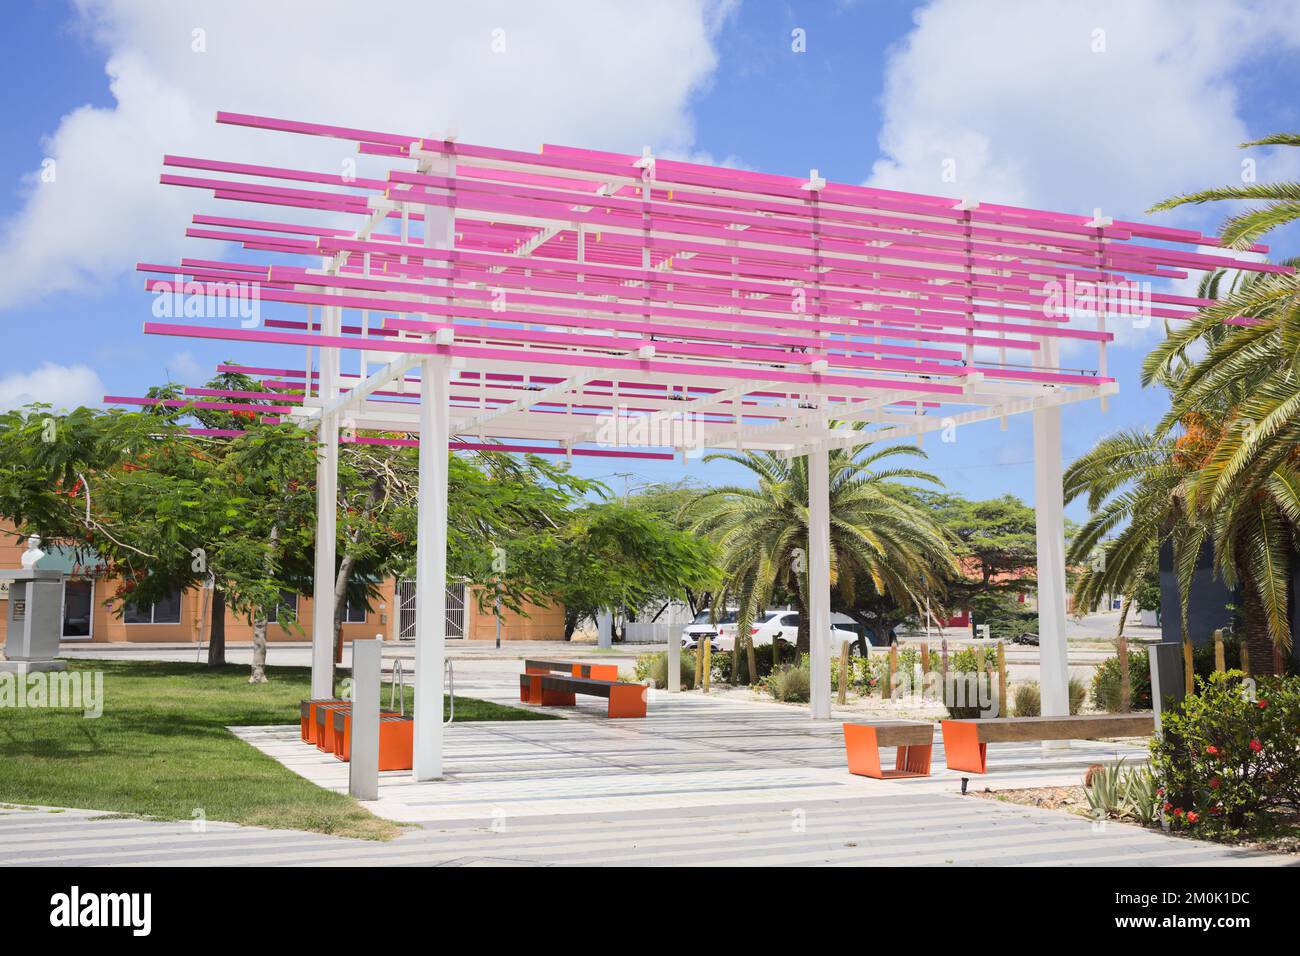 ORANJESTAD, ARUBA - 17 JUILLET 2022 : Parc Gerrit Rietveld le long de Wilhelminastraat, dans le centre-ville d'Oranjestad, sur l'île des Caraïbes d'Aruba Banque D'Images